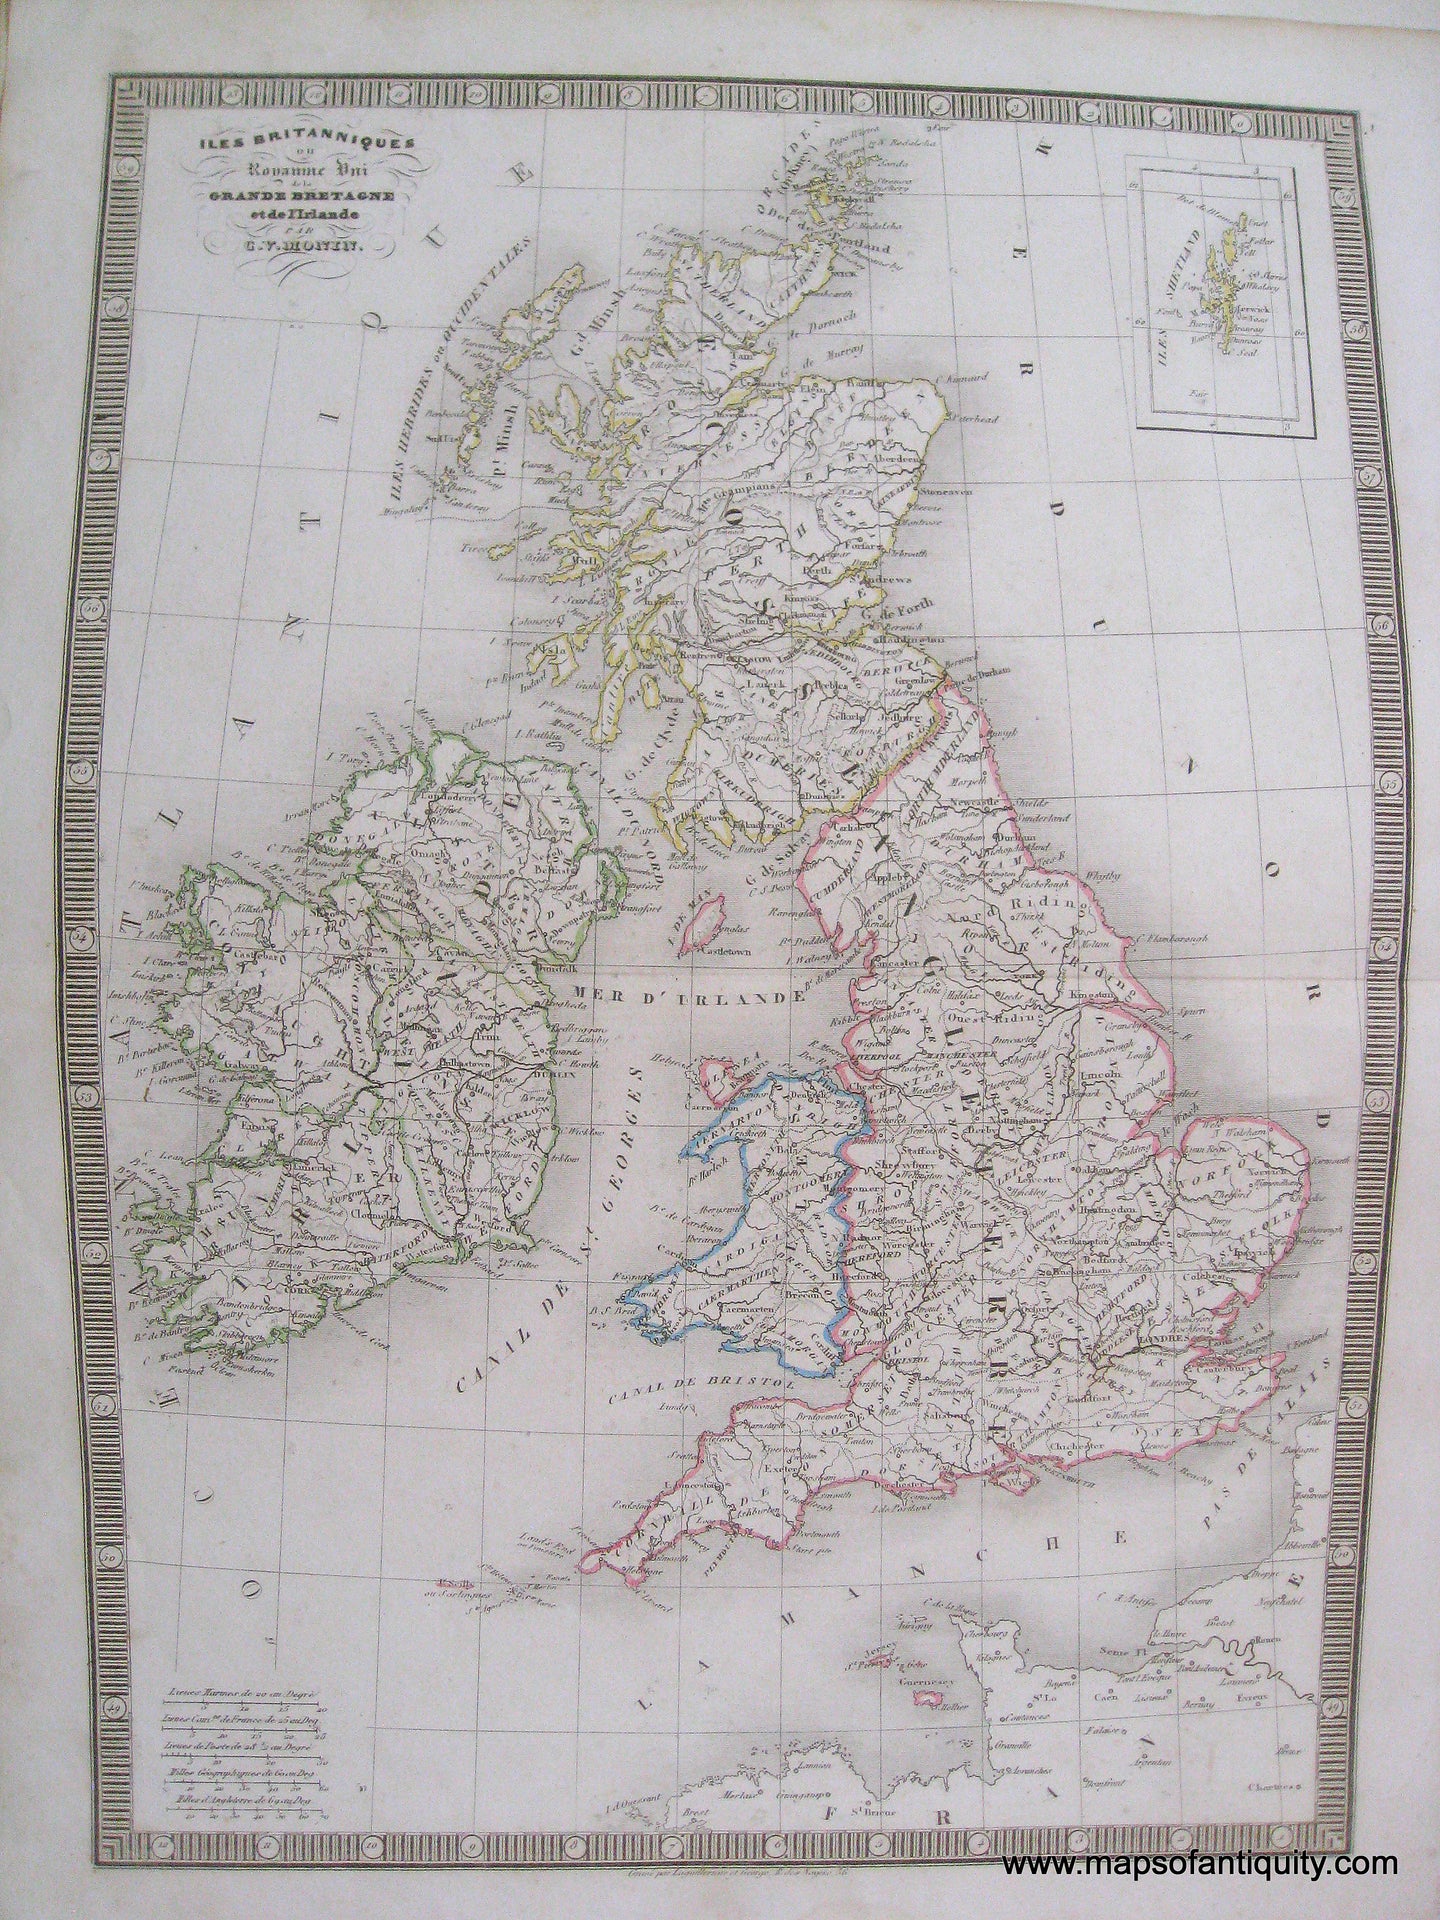 Antique-Hand-Colored-Map-Iles-Britanniques-ou-Royaume-uni-de-la-Grande-Bretagne-et-de-L'Irelande-1846-Monin-England-1800s-19th-century-Maps-of-Antiquity